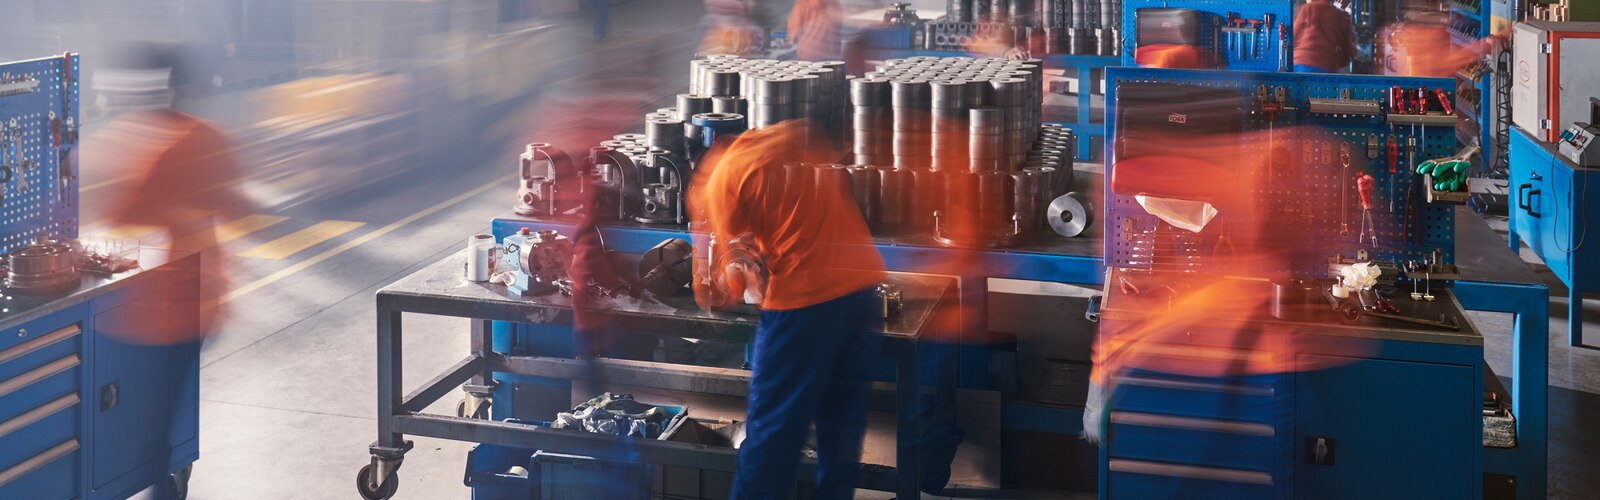 Tork, uma imagem em timelapse que mostra trabalhadores de uma fábrica num ambiente industrial movimentado